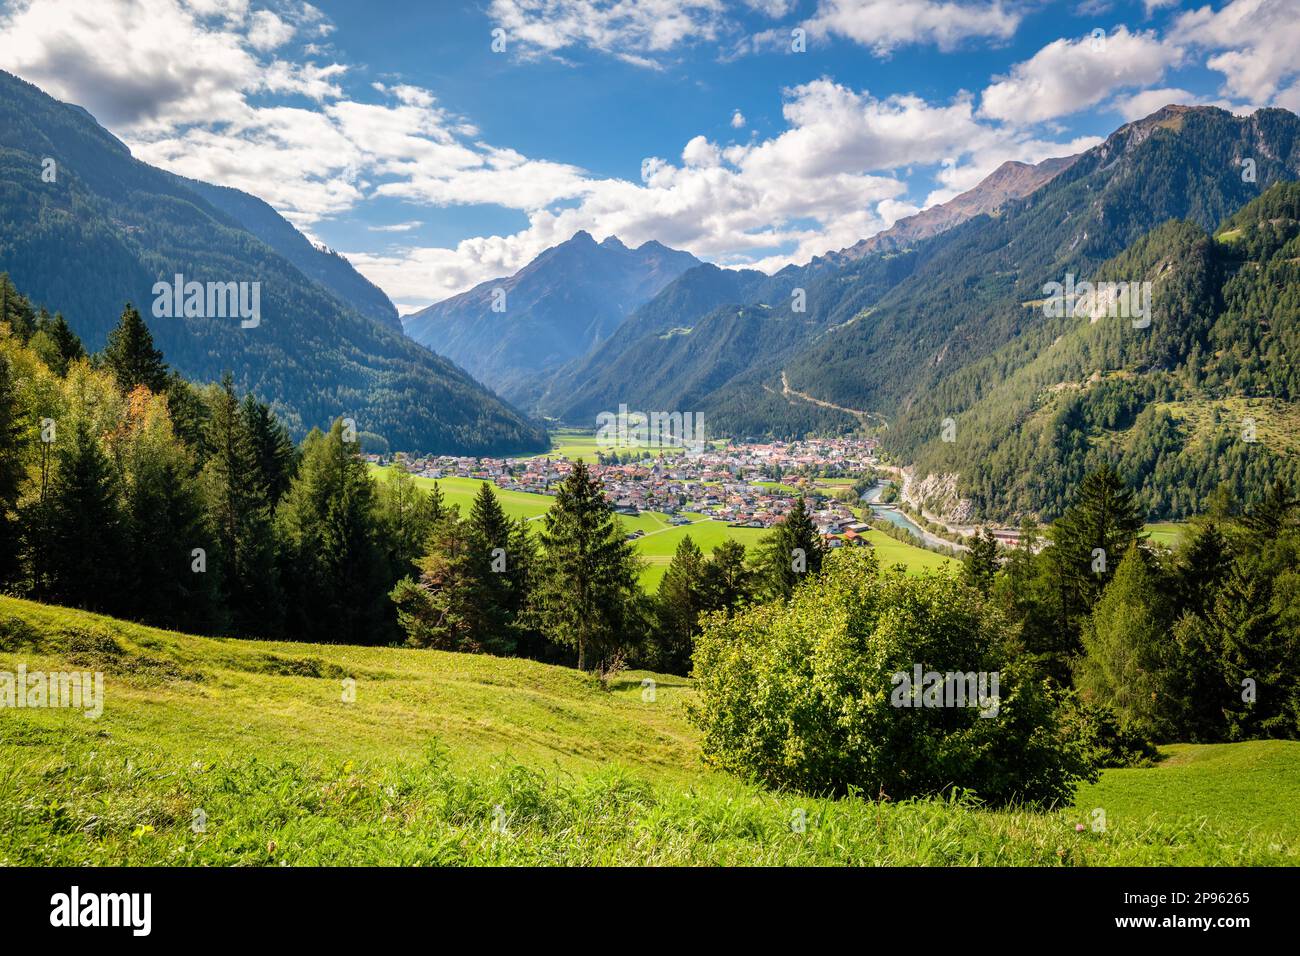 Pfunds est un village de la vallée de l'Inntal. Il est niché dans un coin de Tirol au point où trois pays (Autriche, Italie et Suisse) se rencontrent Banque D'Images